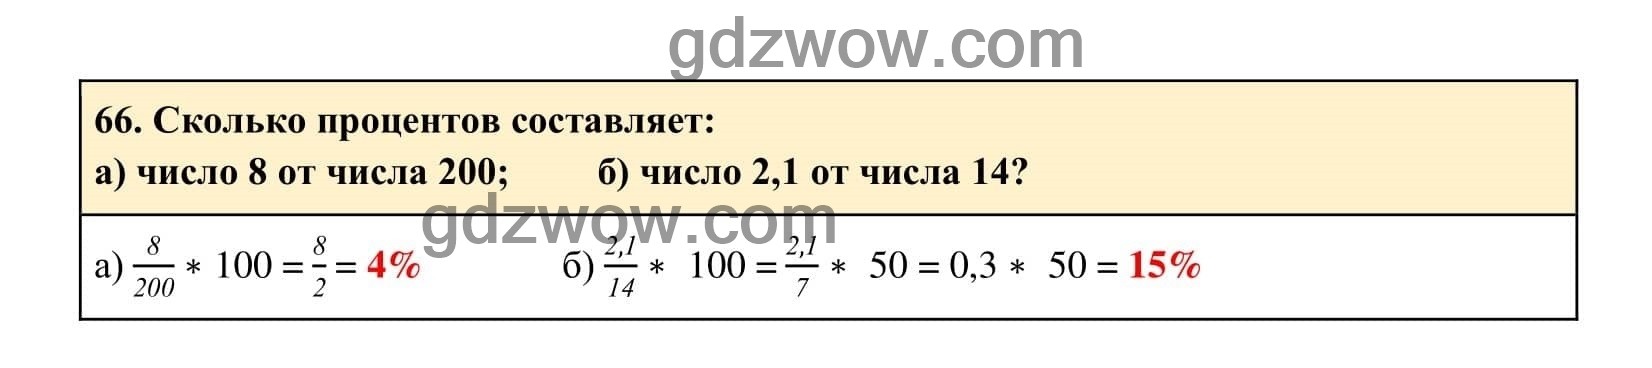 Упражнение 66 - ГДЗ по Алгебре 7 класс Учебник Макарычев (решебник) - GDZwow